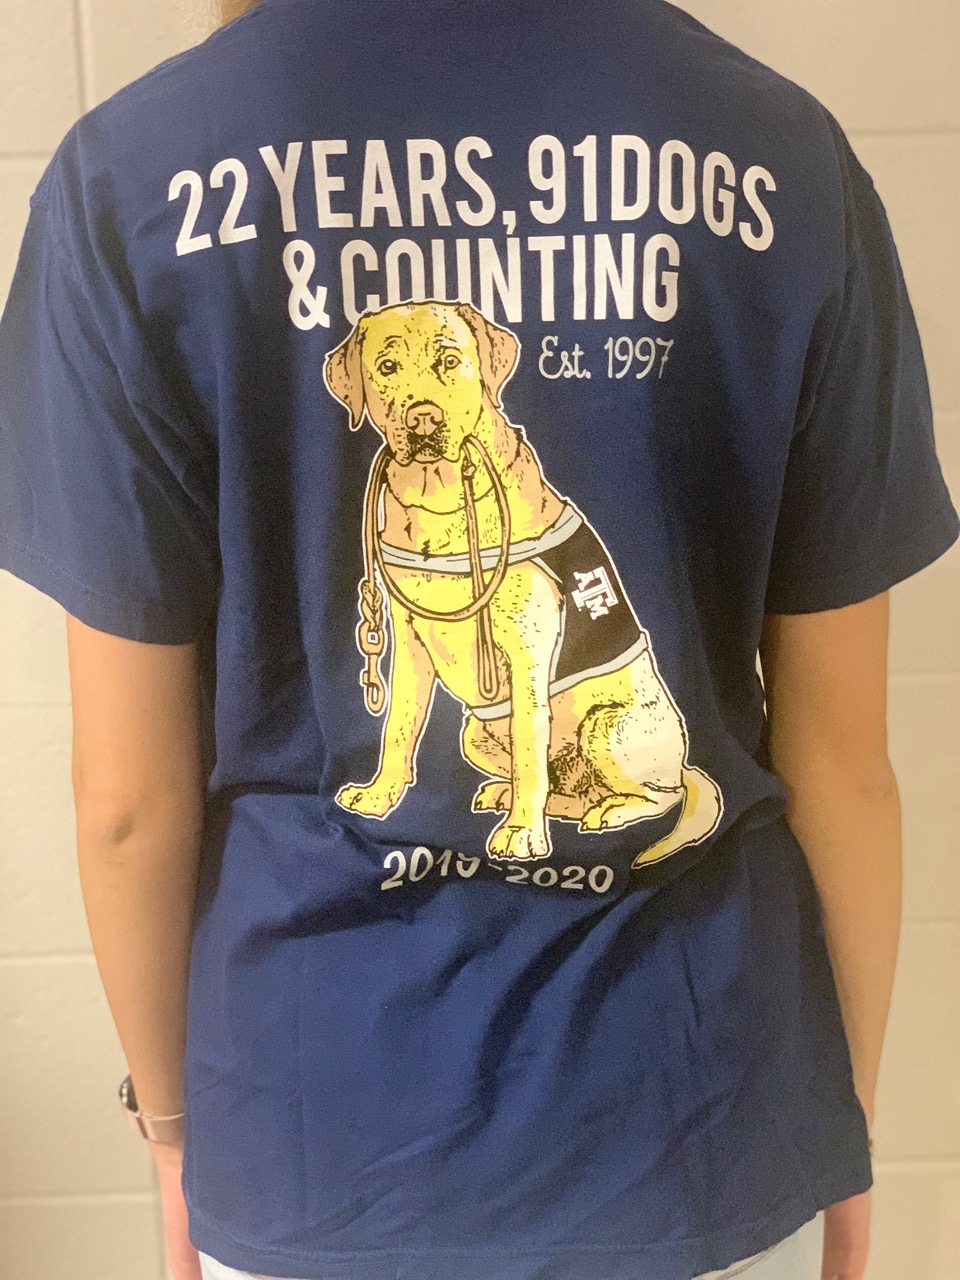 2019-2020 T-Shirt